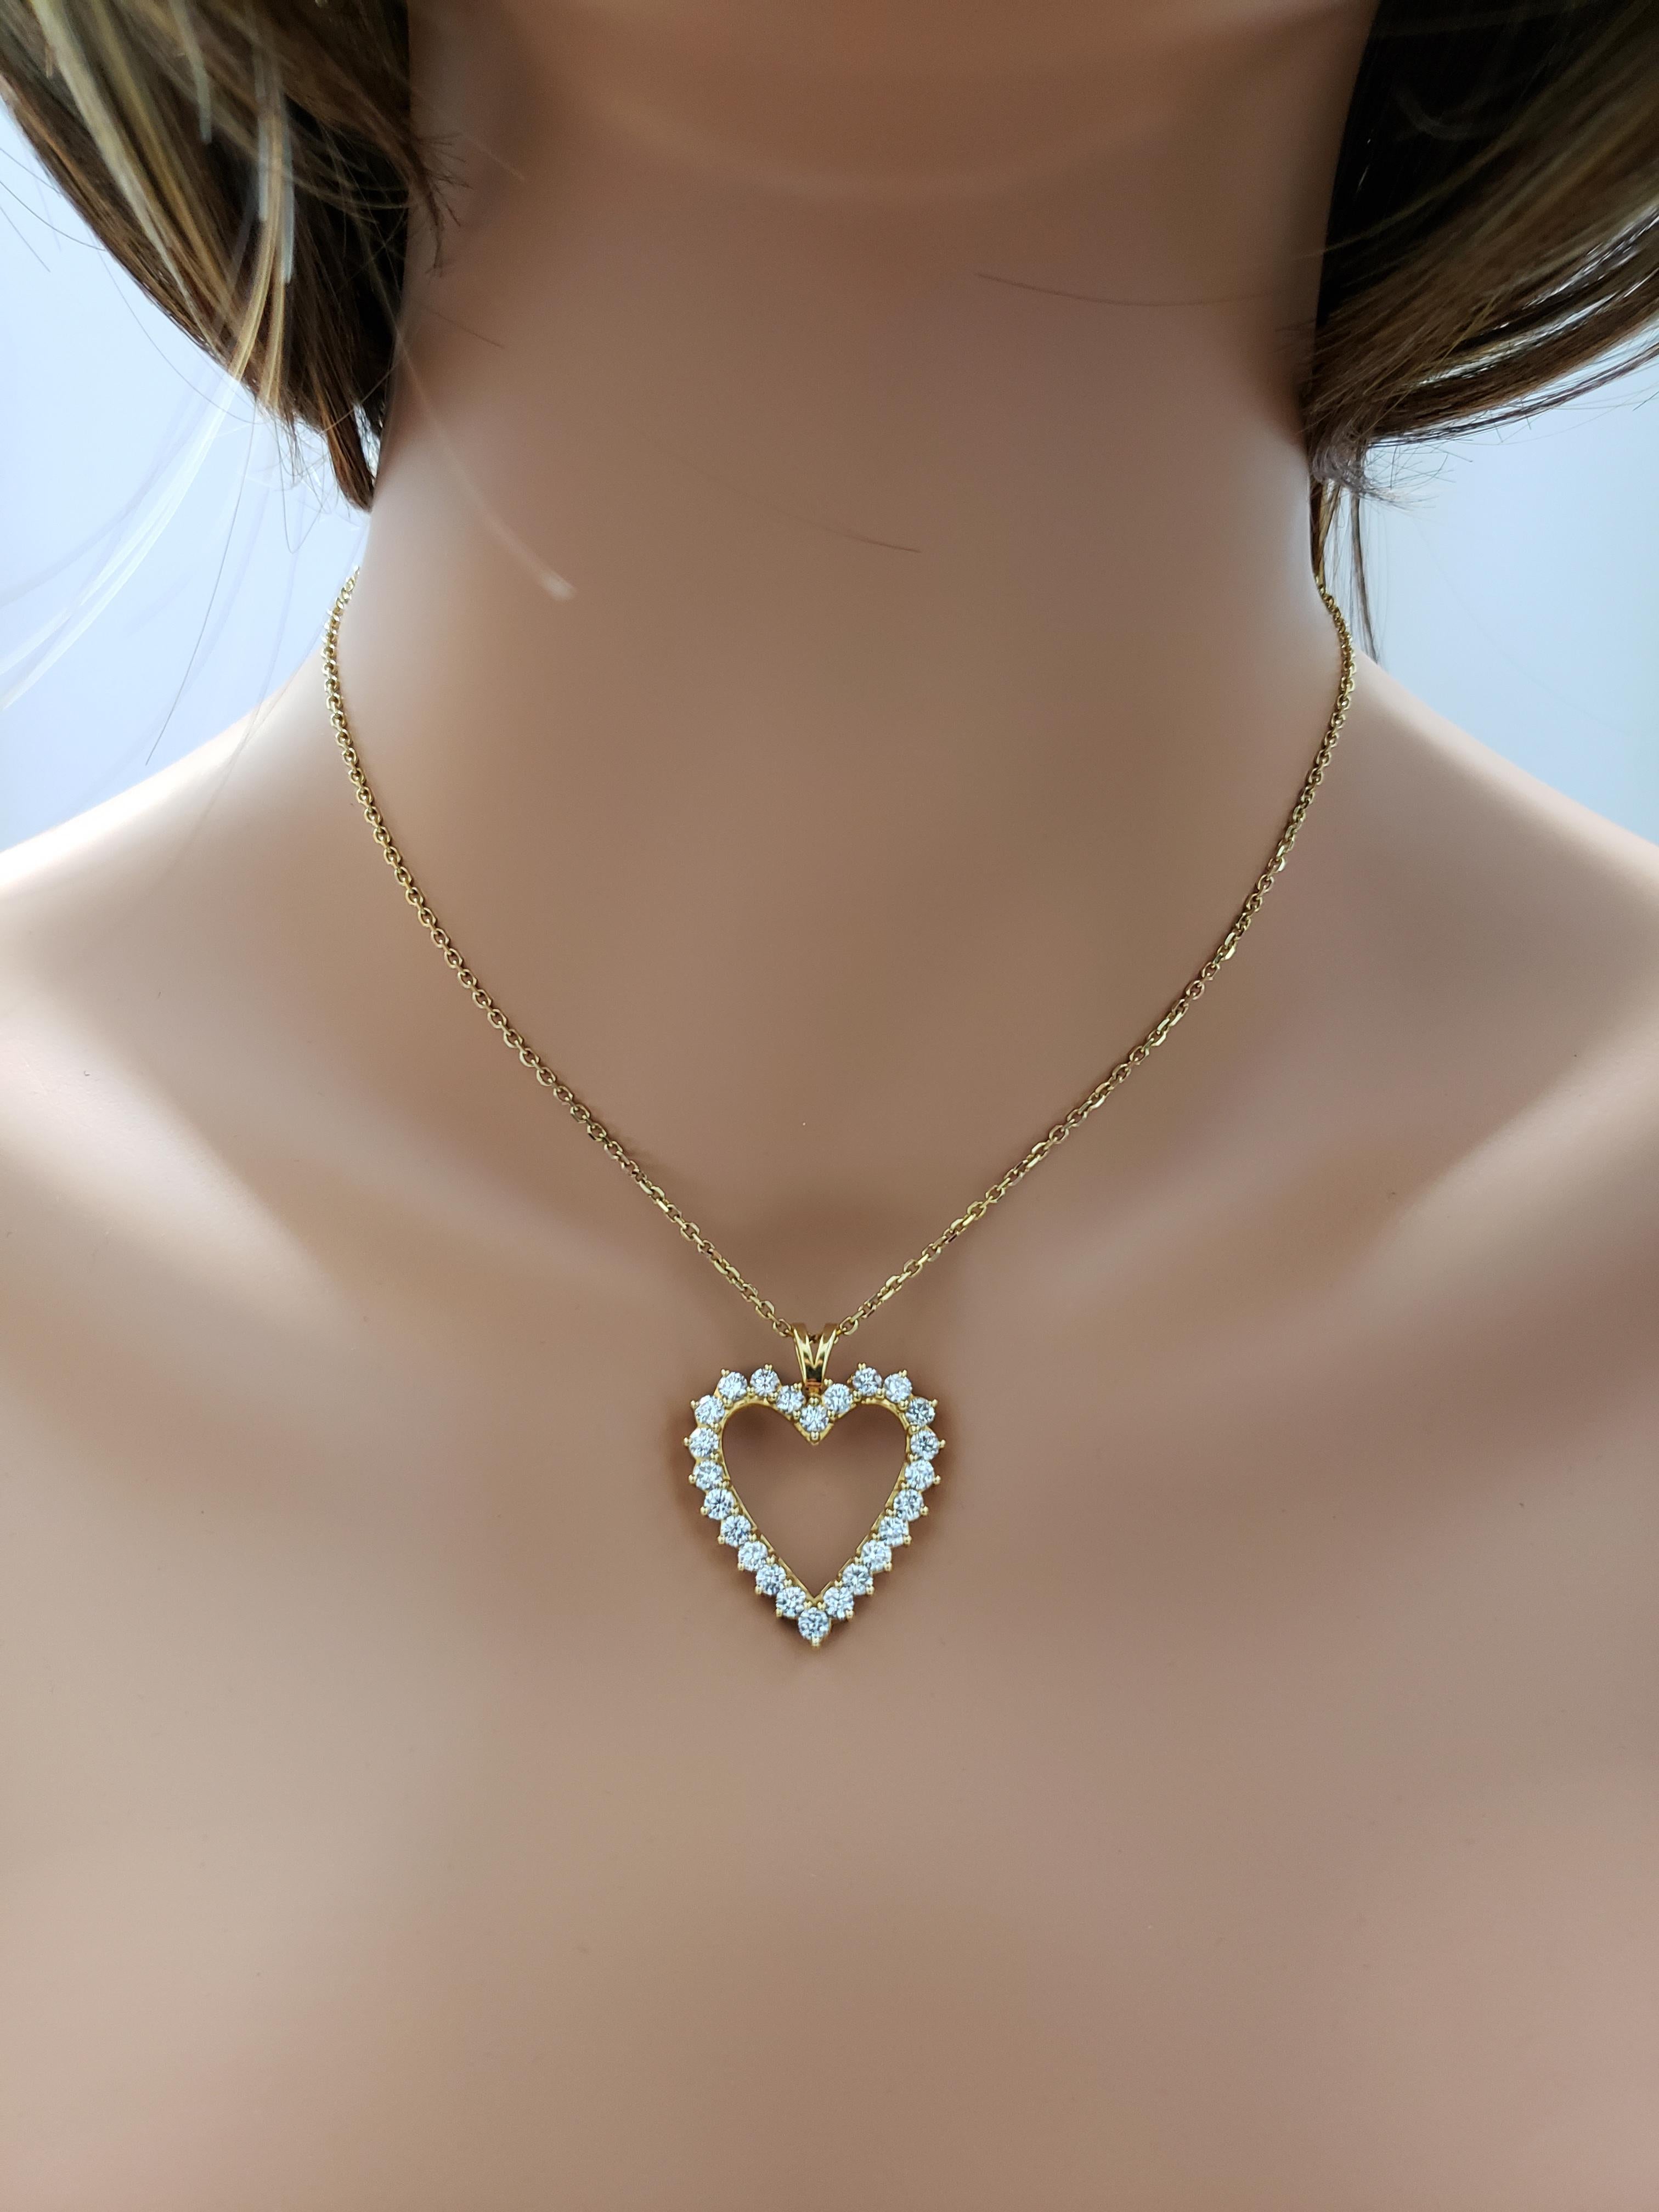 Round Cut 2.92 Carat Diamond Open Heart Pendant Necklace